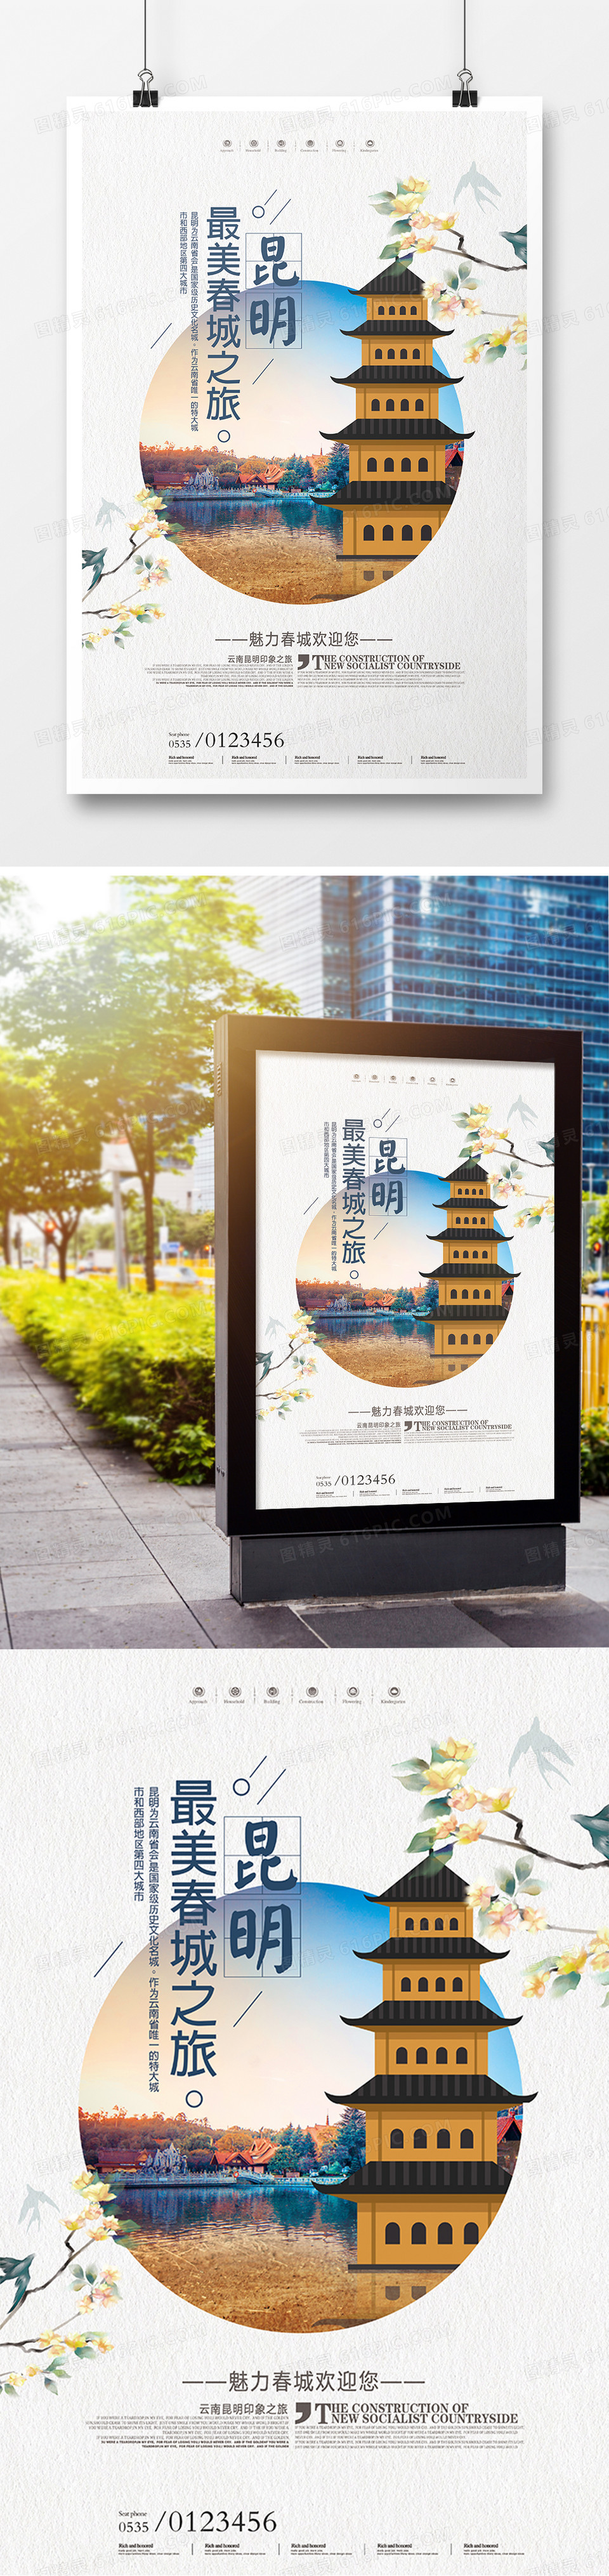 小清新昆明旅游宣传海报模板